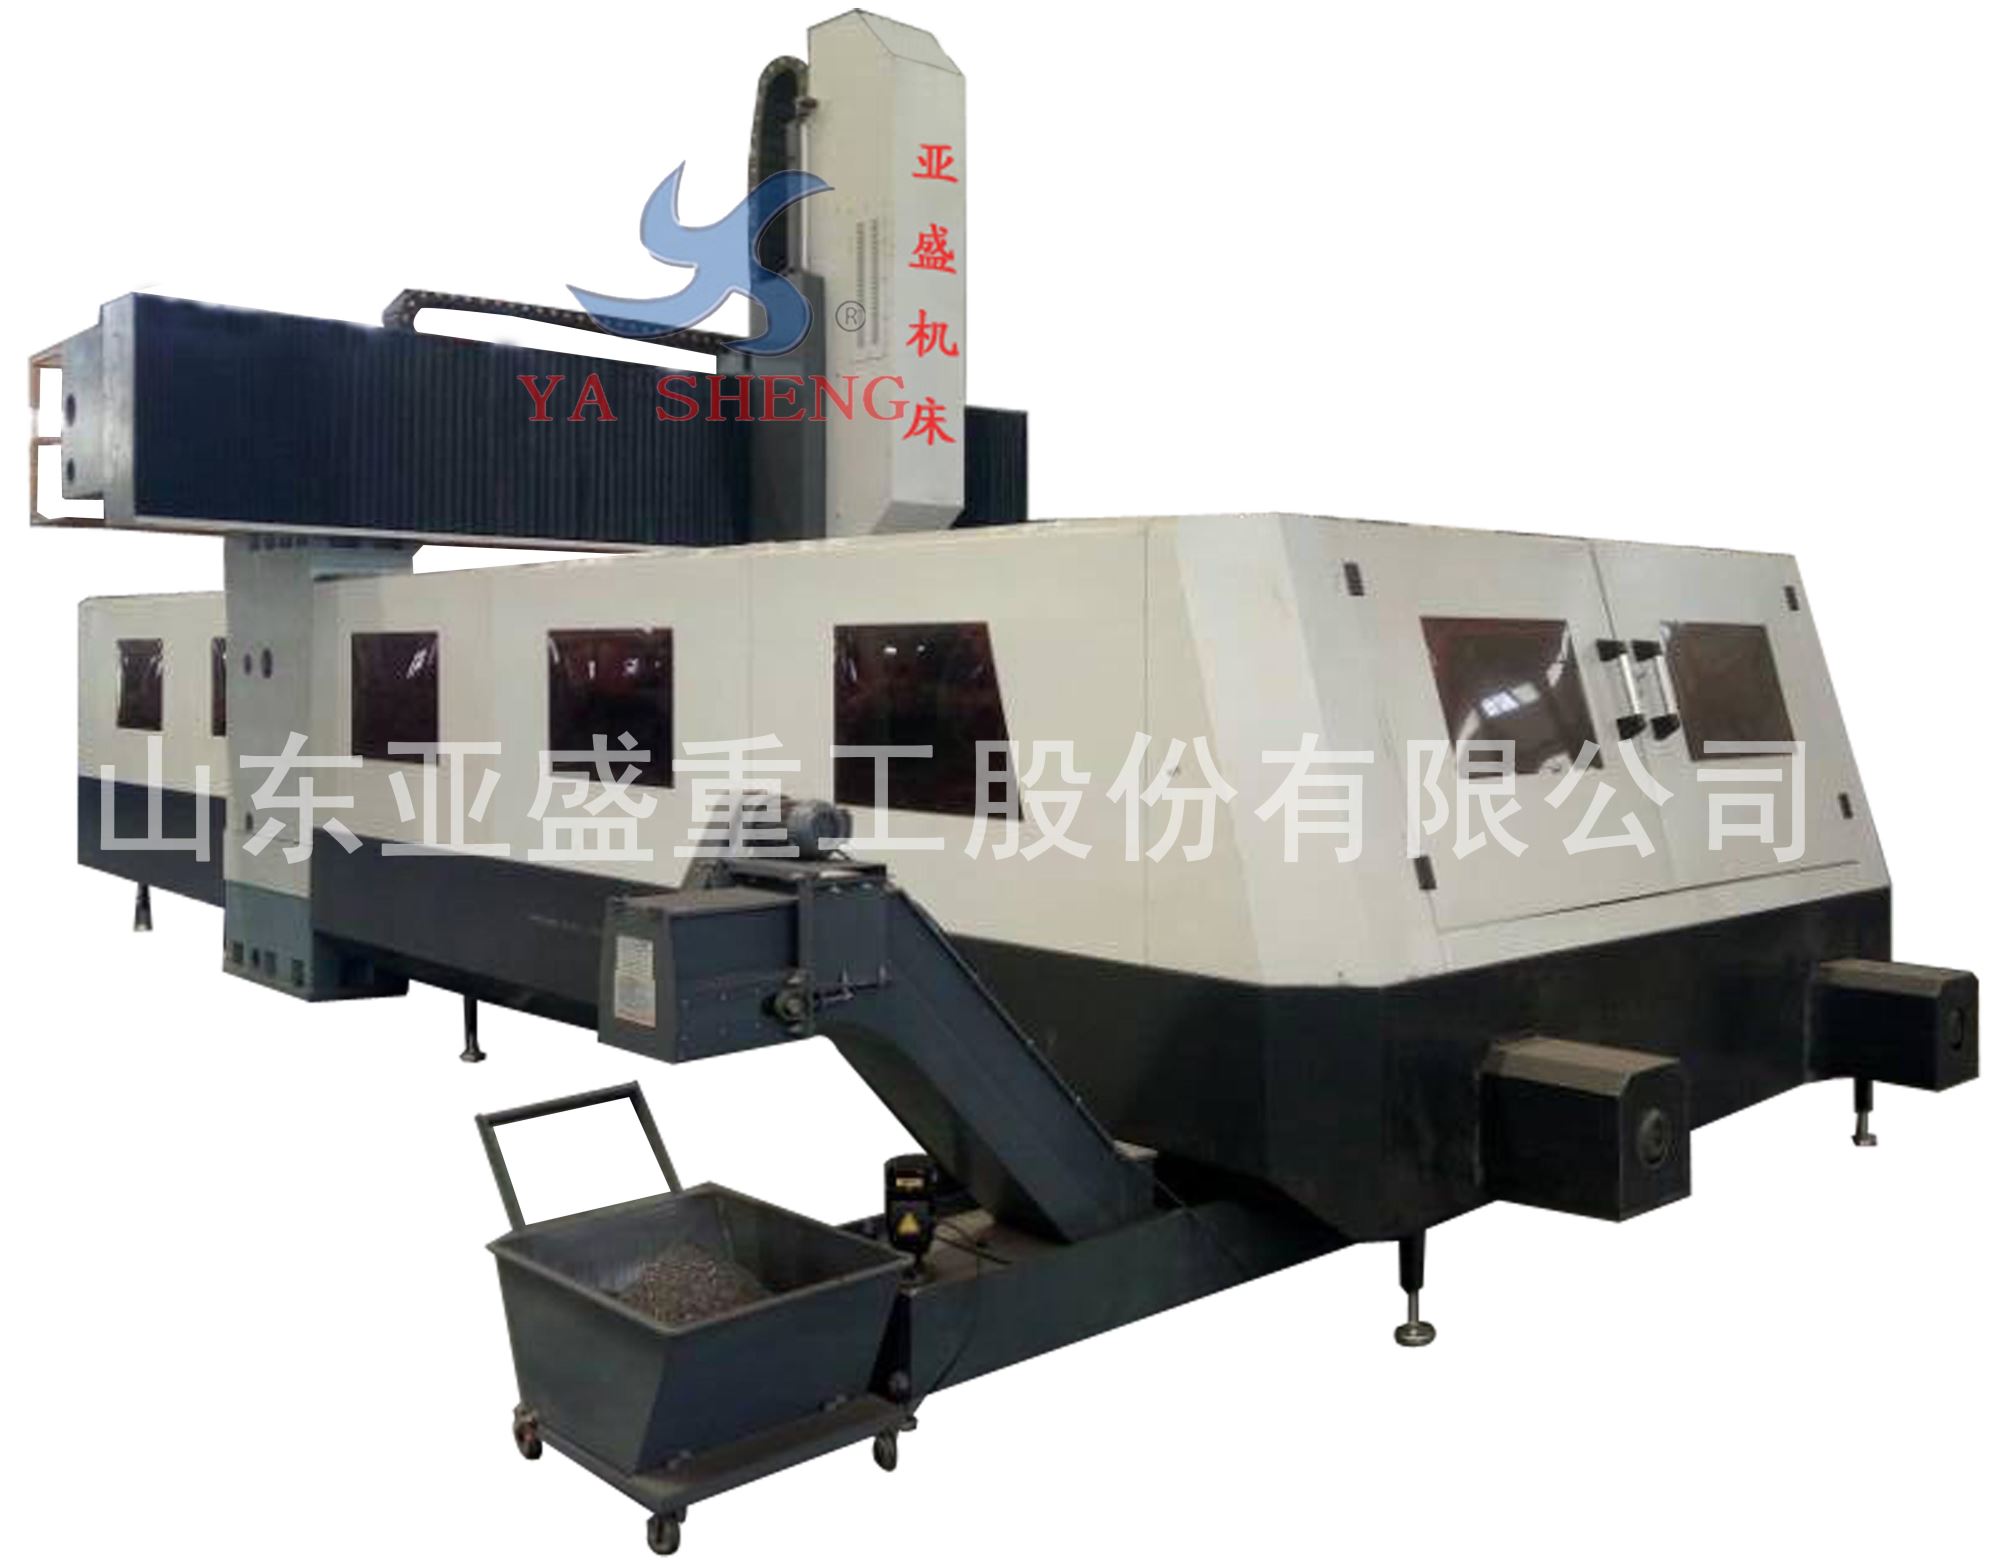 XK (H) 24 series of fixed-beam fixed-beam gantry milling machine, machining center